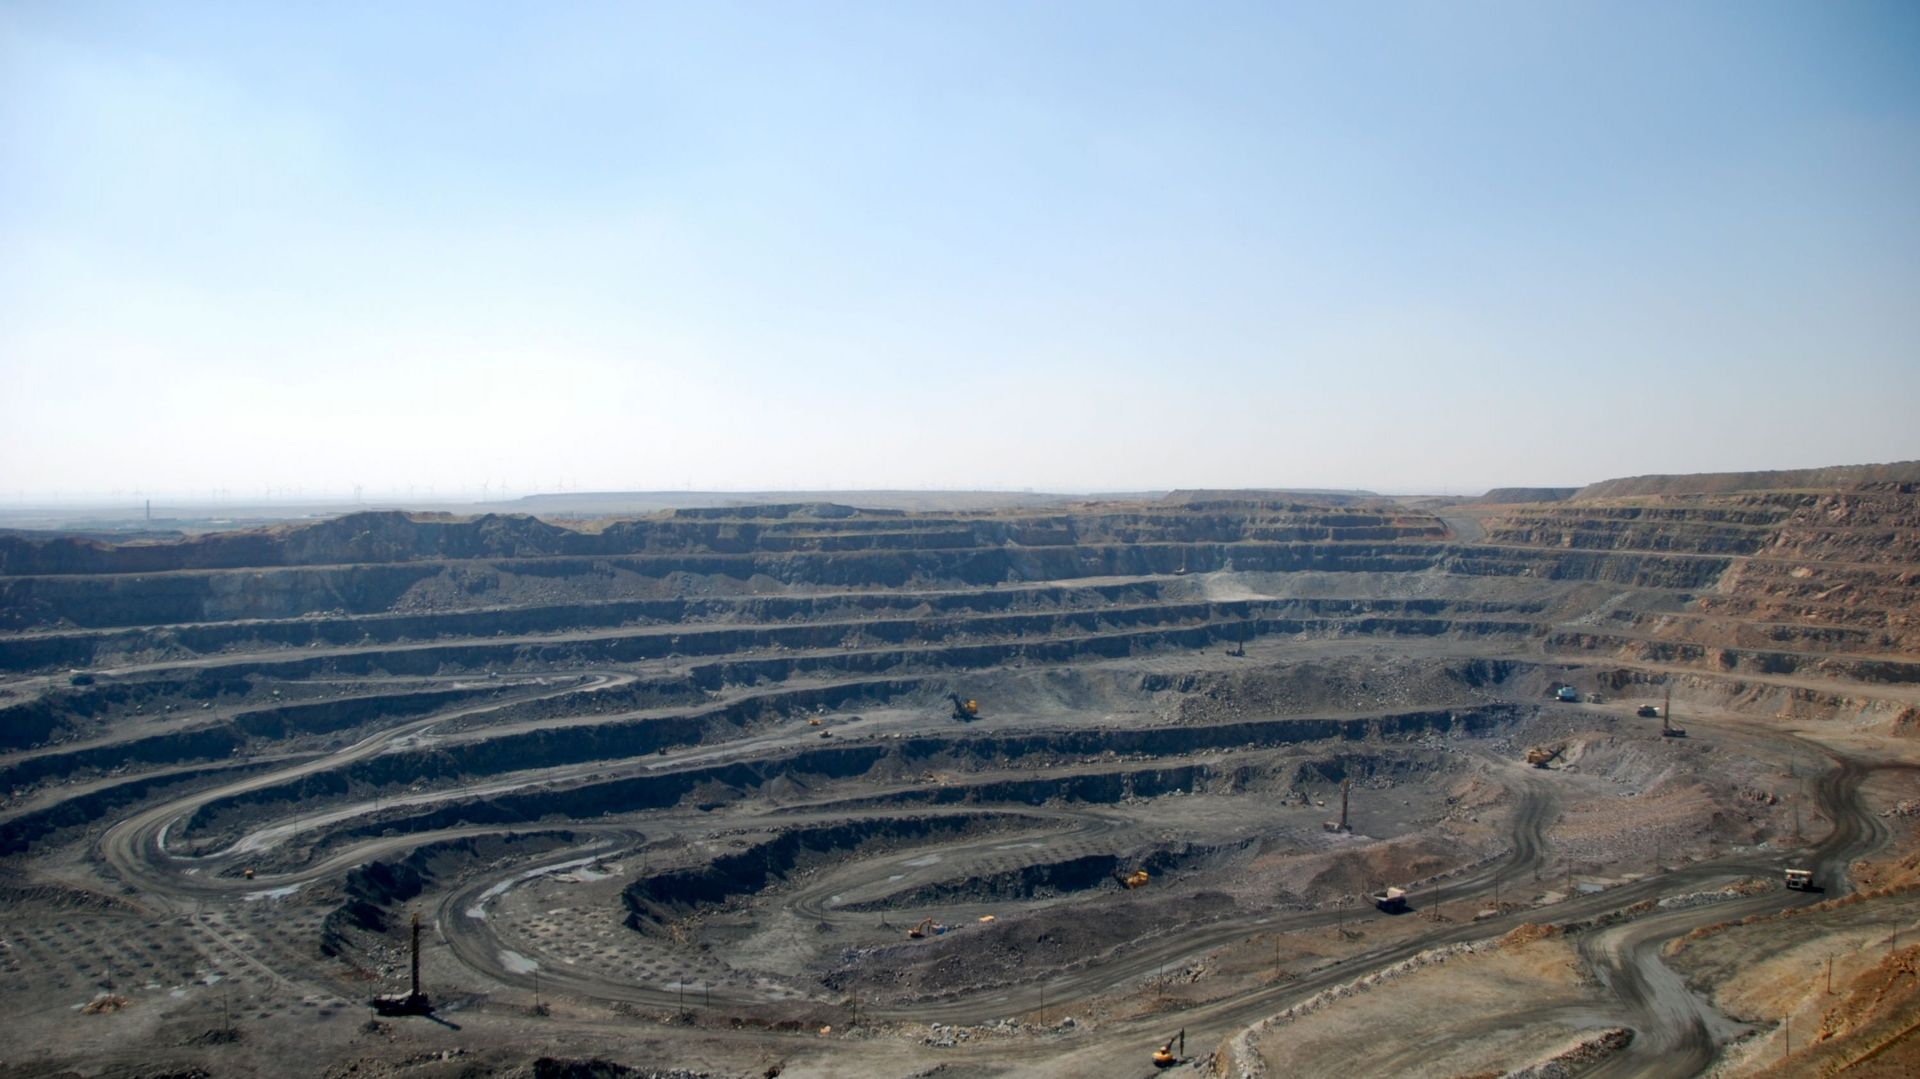 Mine de terres rares à Bayan Obo en Mongolie intérieure en Chine. Les mines situées au nord de la ville constituent l’un des plus grands gisements de métaux de terres rares au monde.